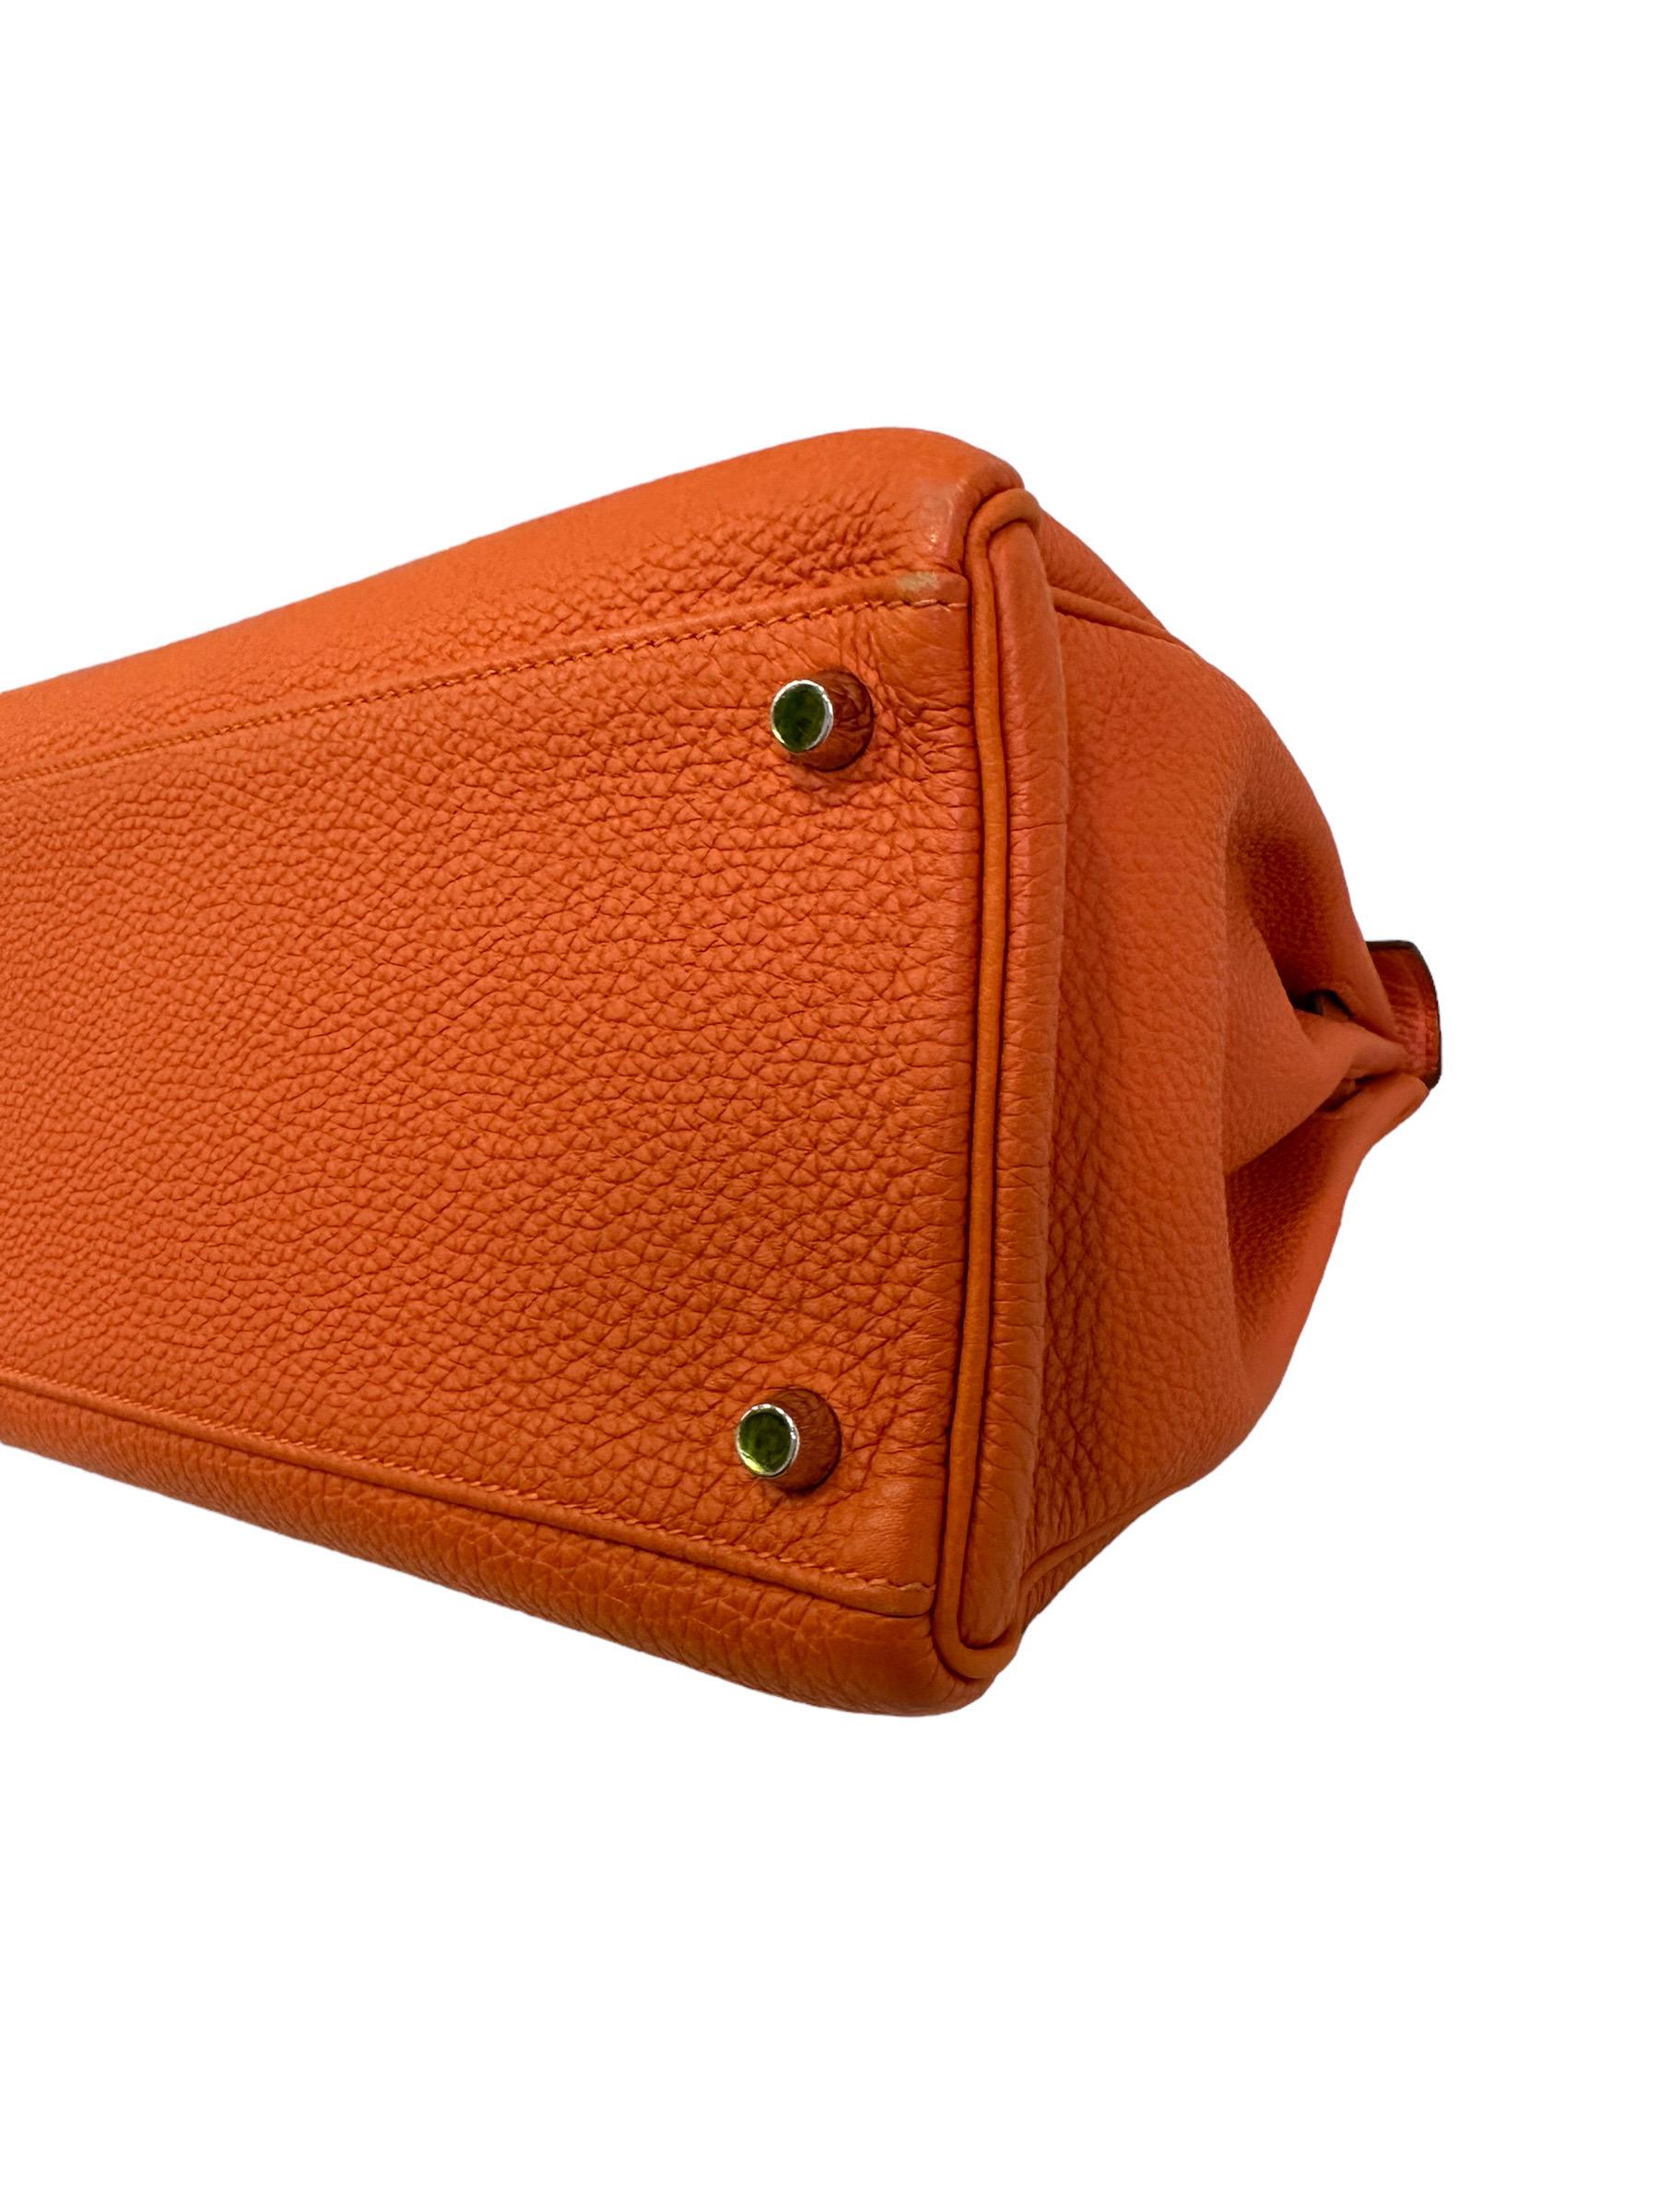 2011 Hermès Kelly 35 Fjord Leather Orange Top Handle Bag  8